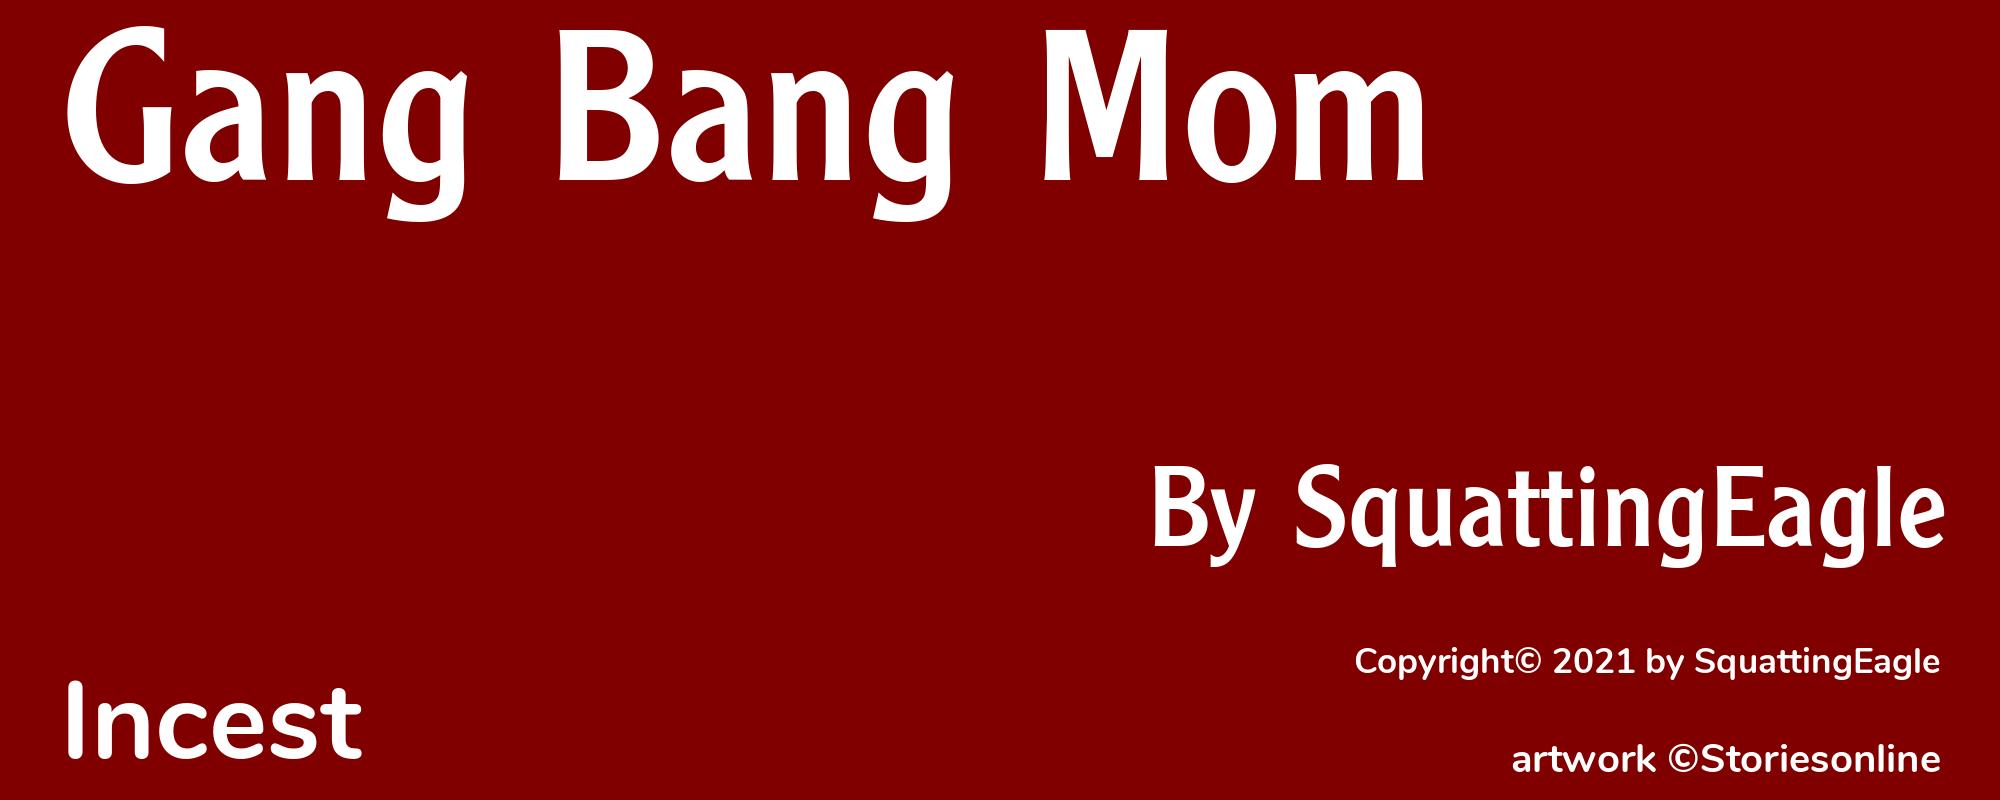 Gang Bang Mom - Cover